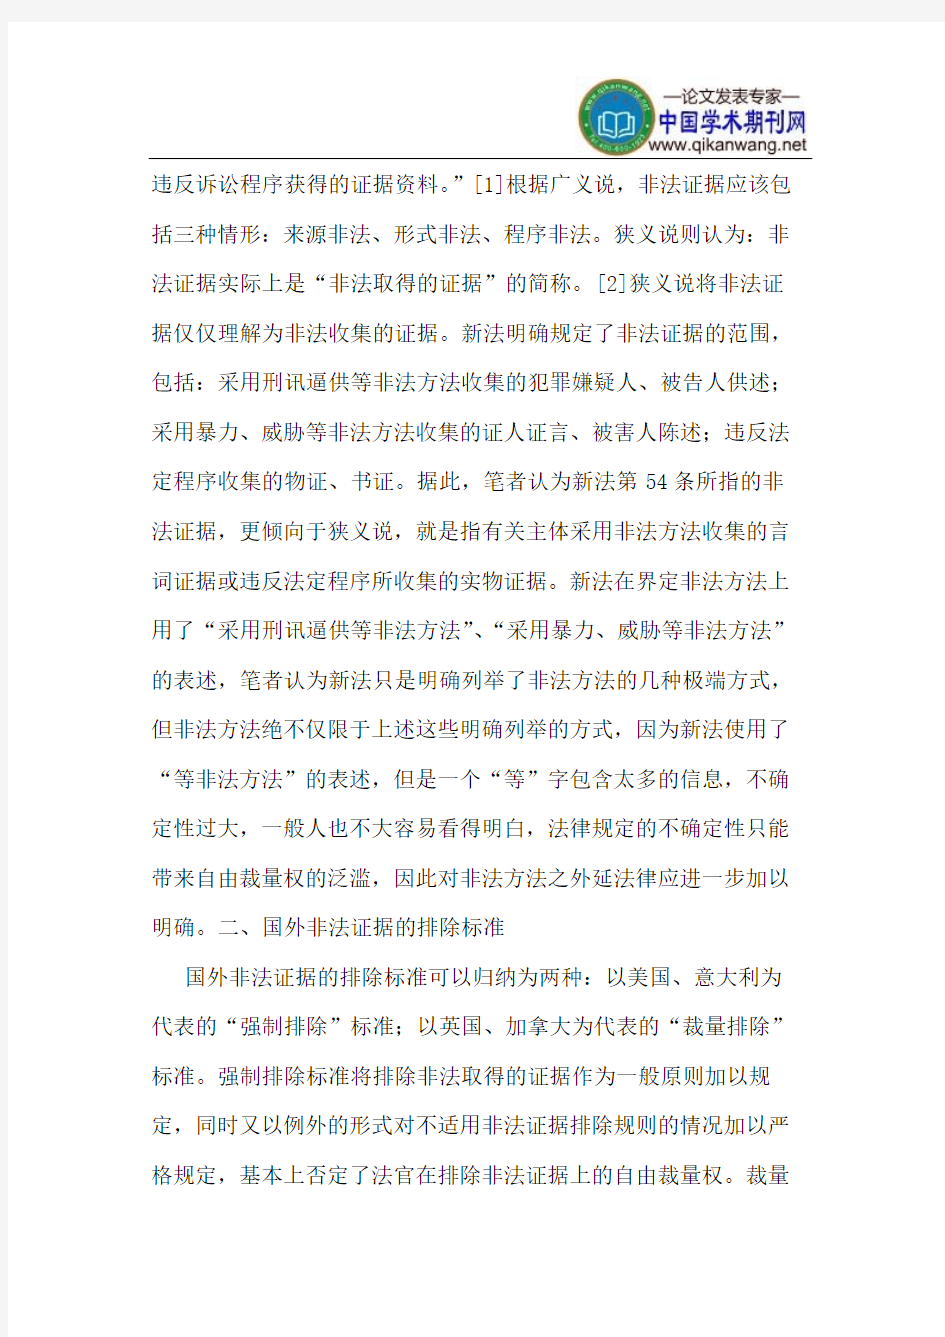 《中华人民共和国刑事诉讼法》确立的非法证据排除标准